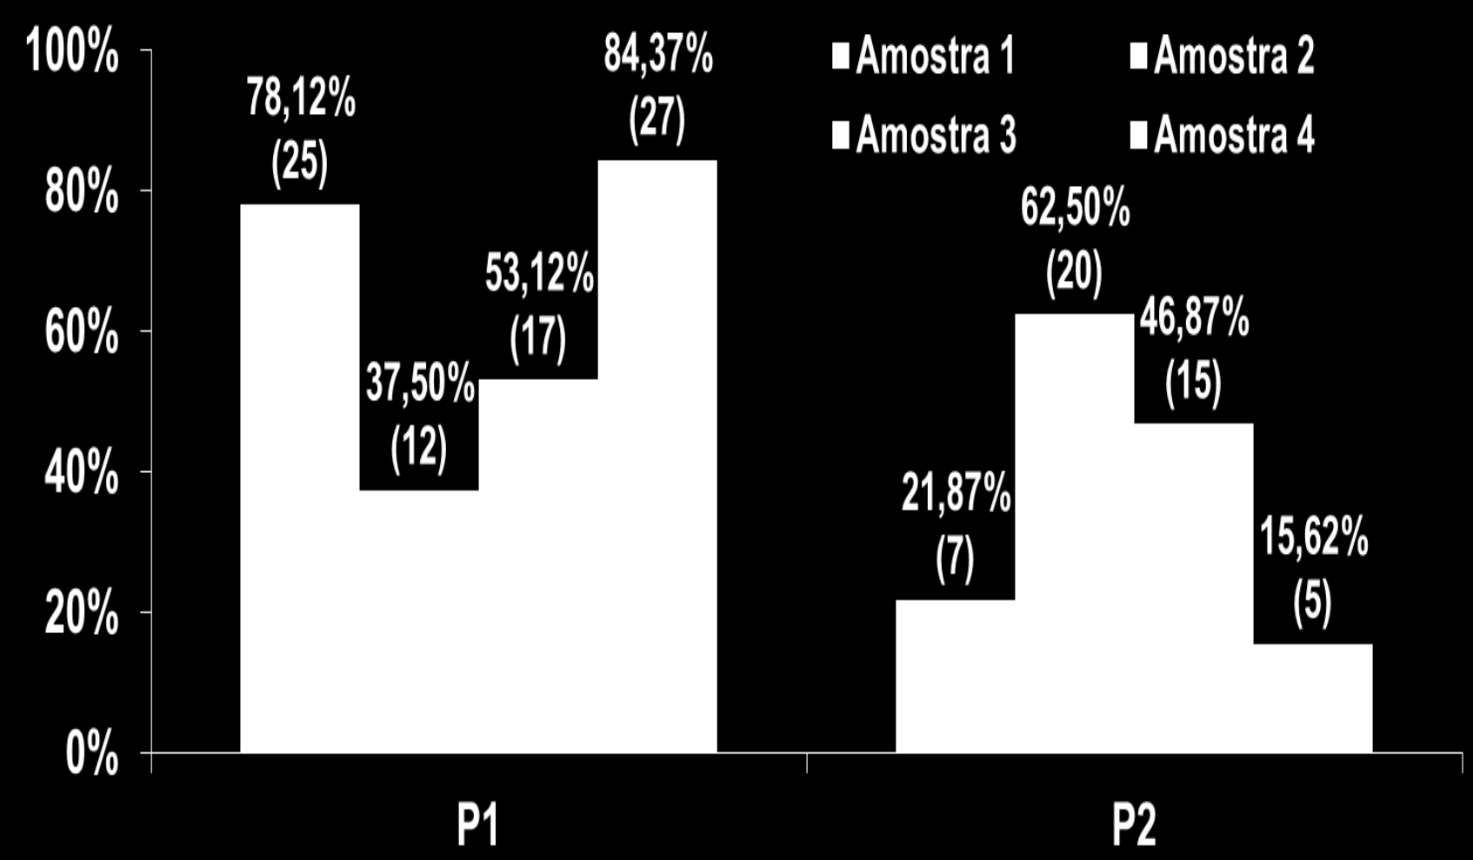 Figura 2: porcentagem de pacientes com o nível de fósforo normal (P1) e acima do normal (P2) considerando a faixa etária de acordo com a forma de coleta.